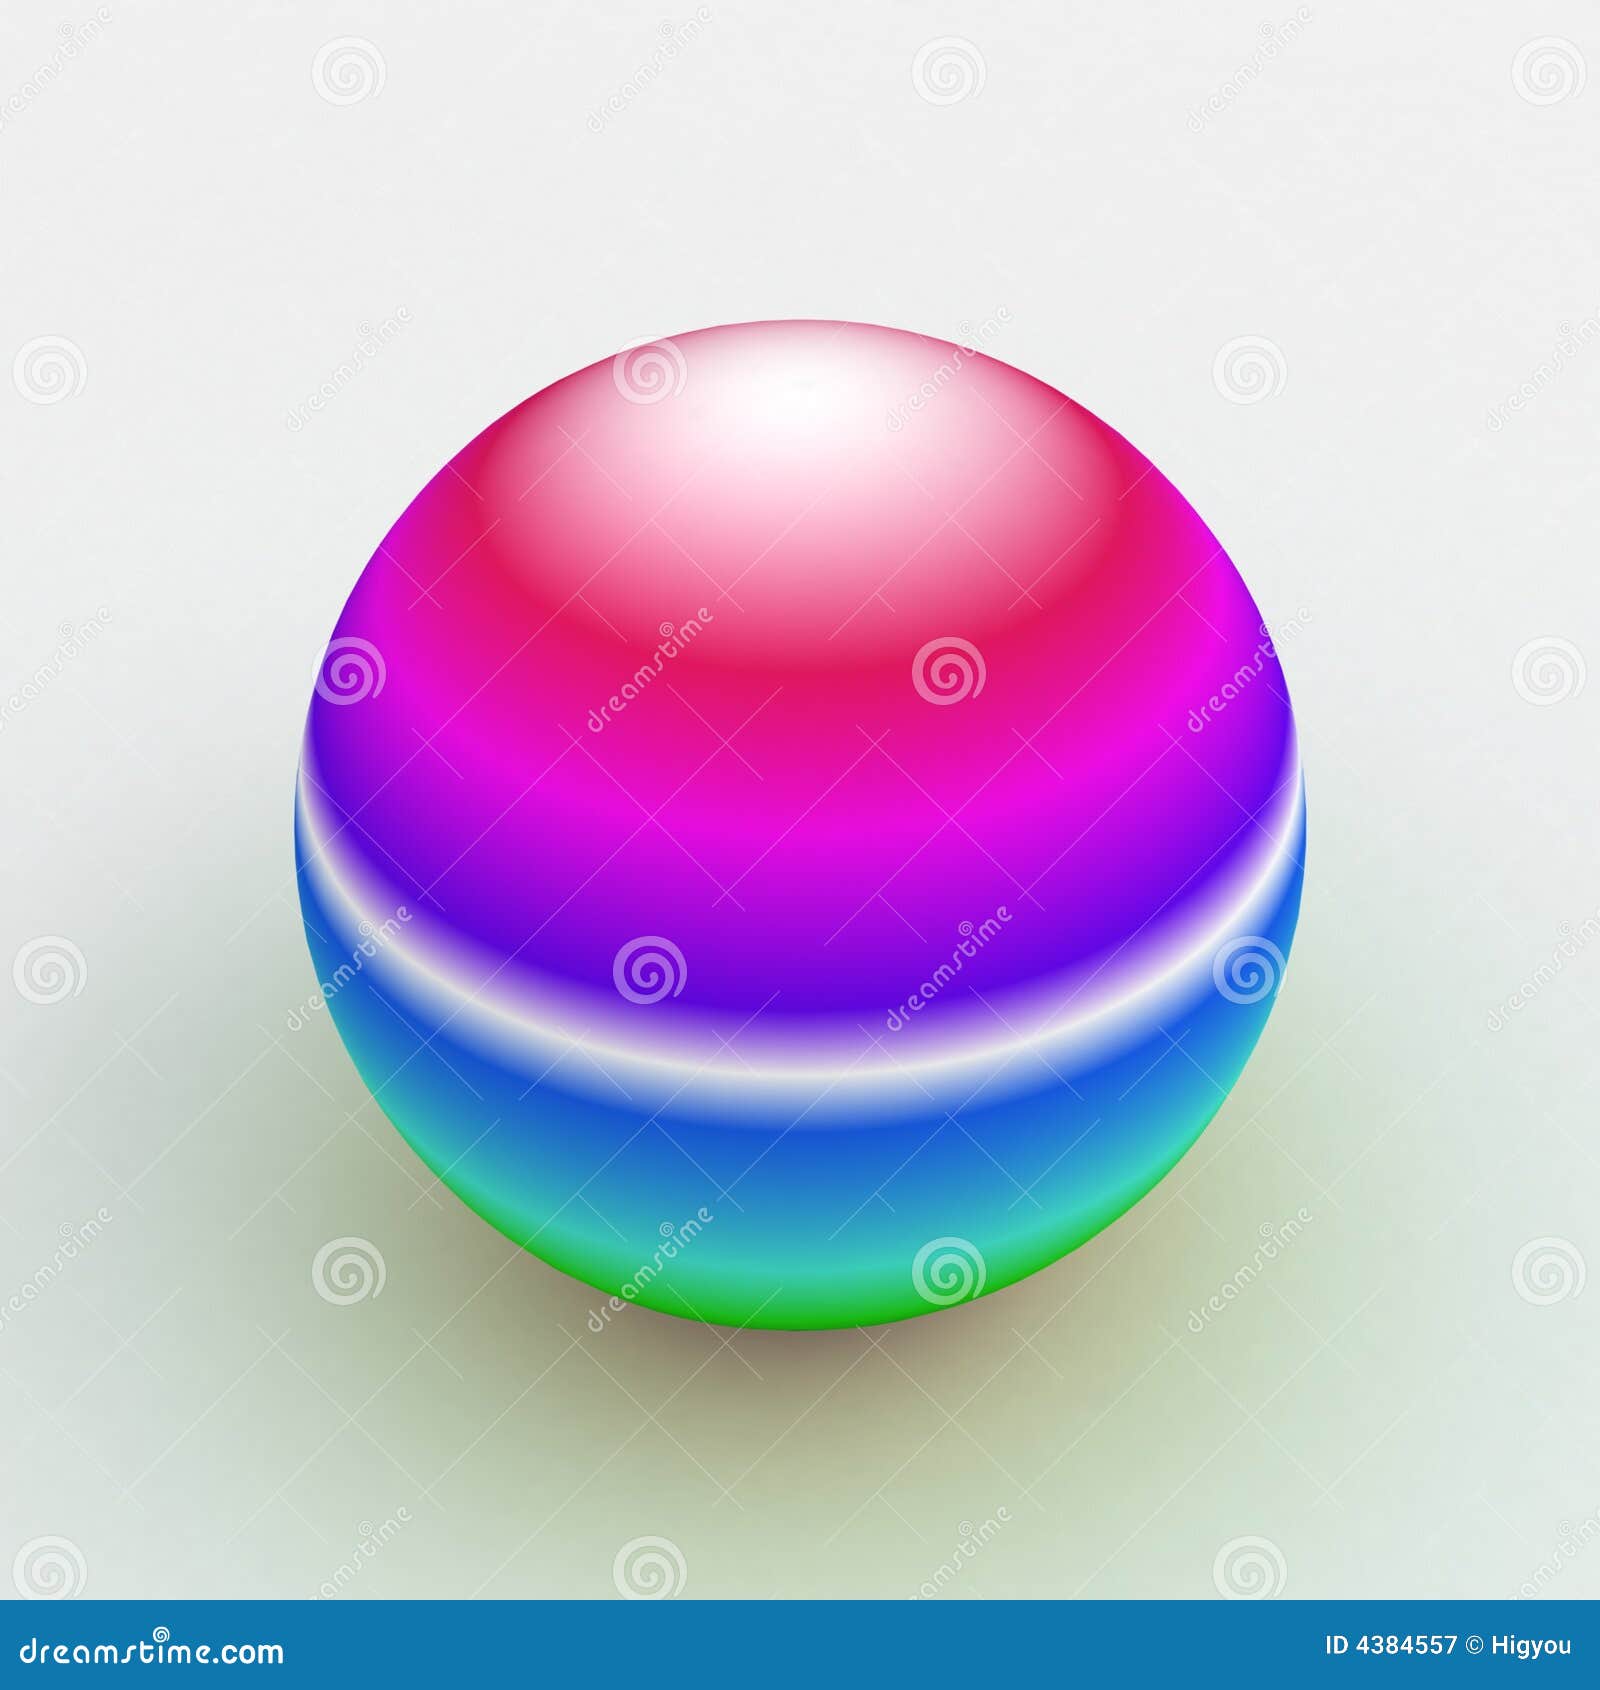 Dreamsphere colour-changing sphere,purest rainbow colours imaginable J07a 